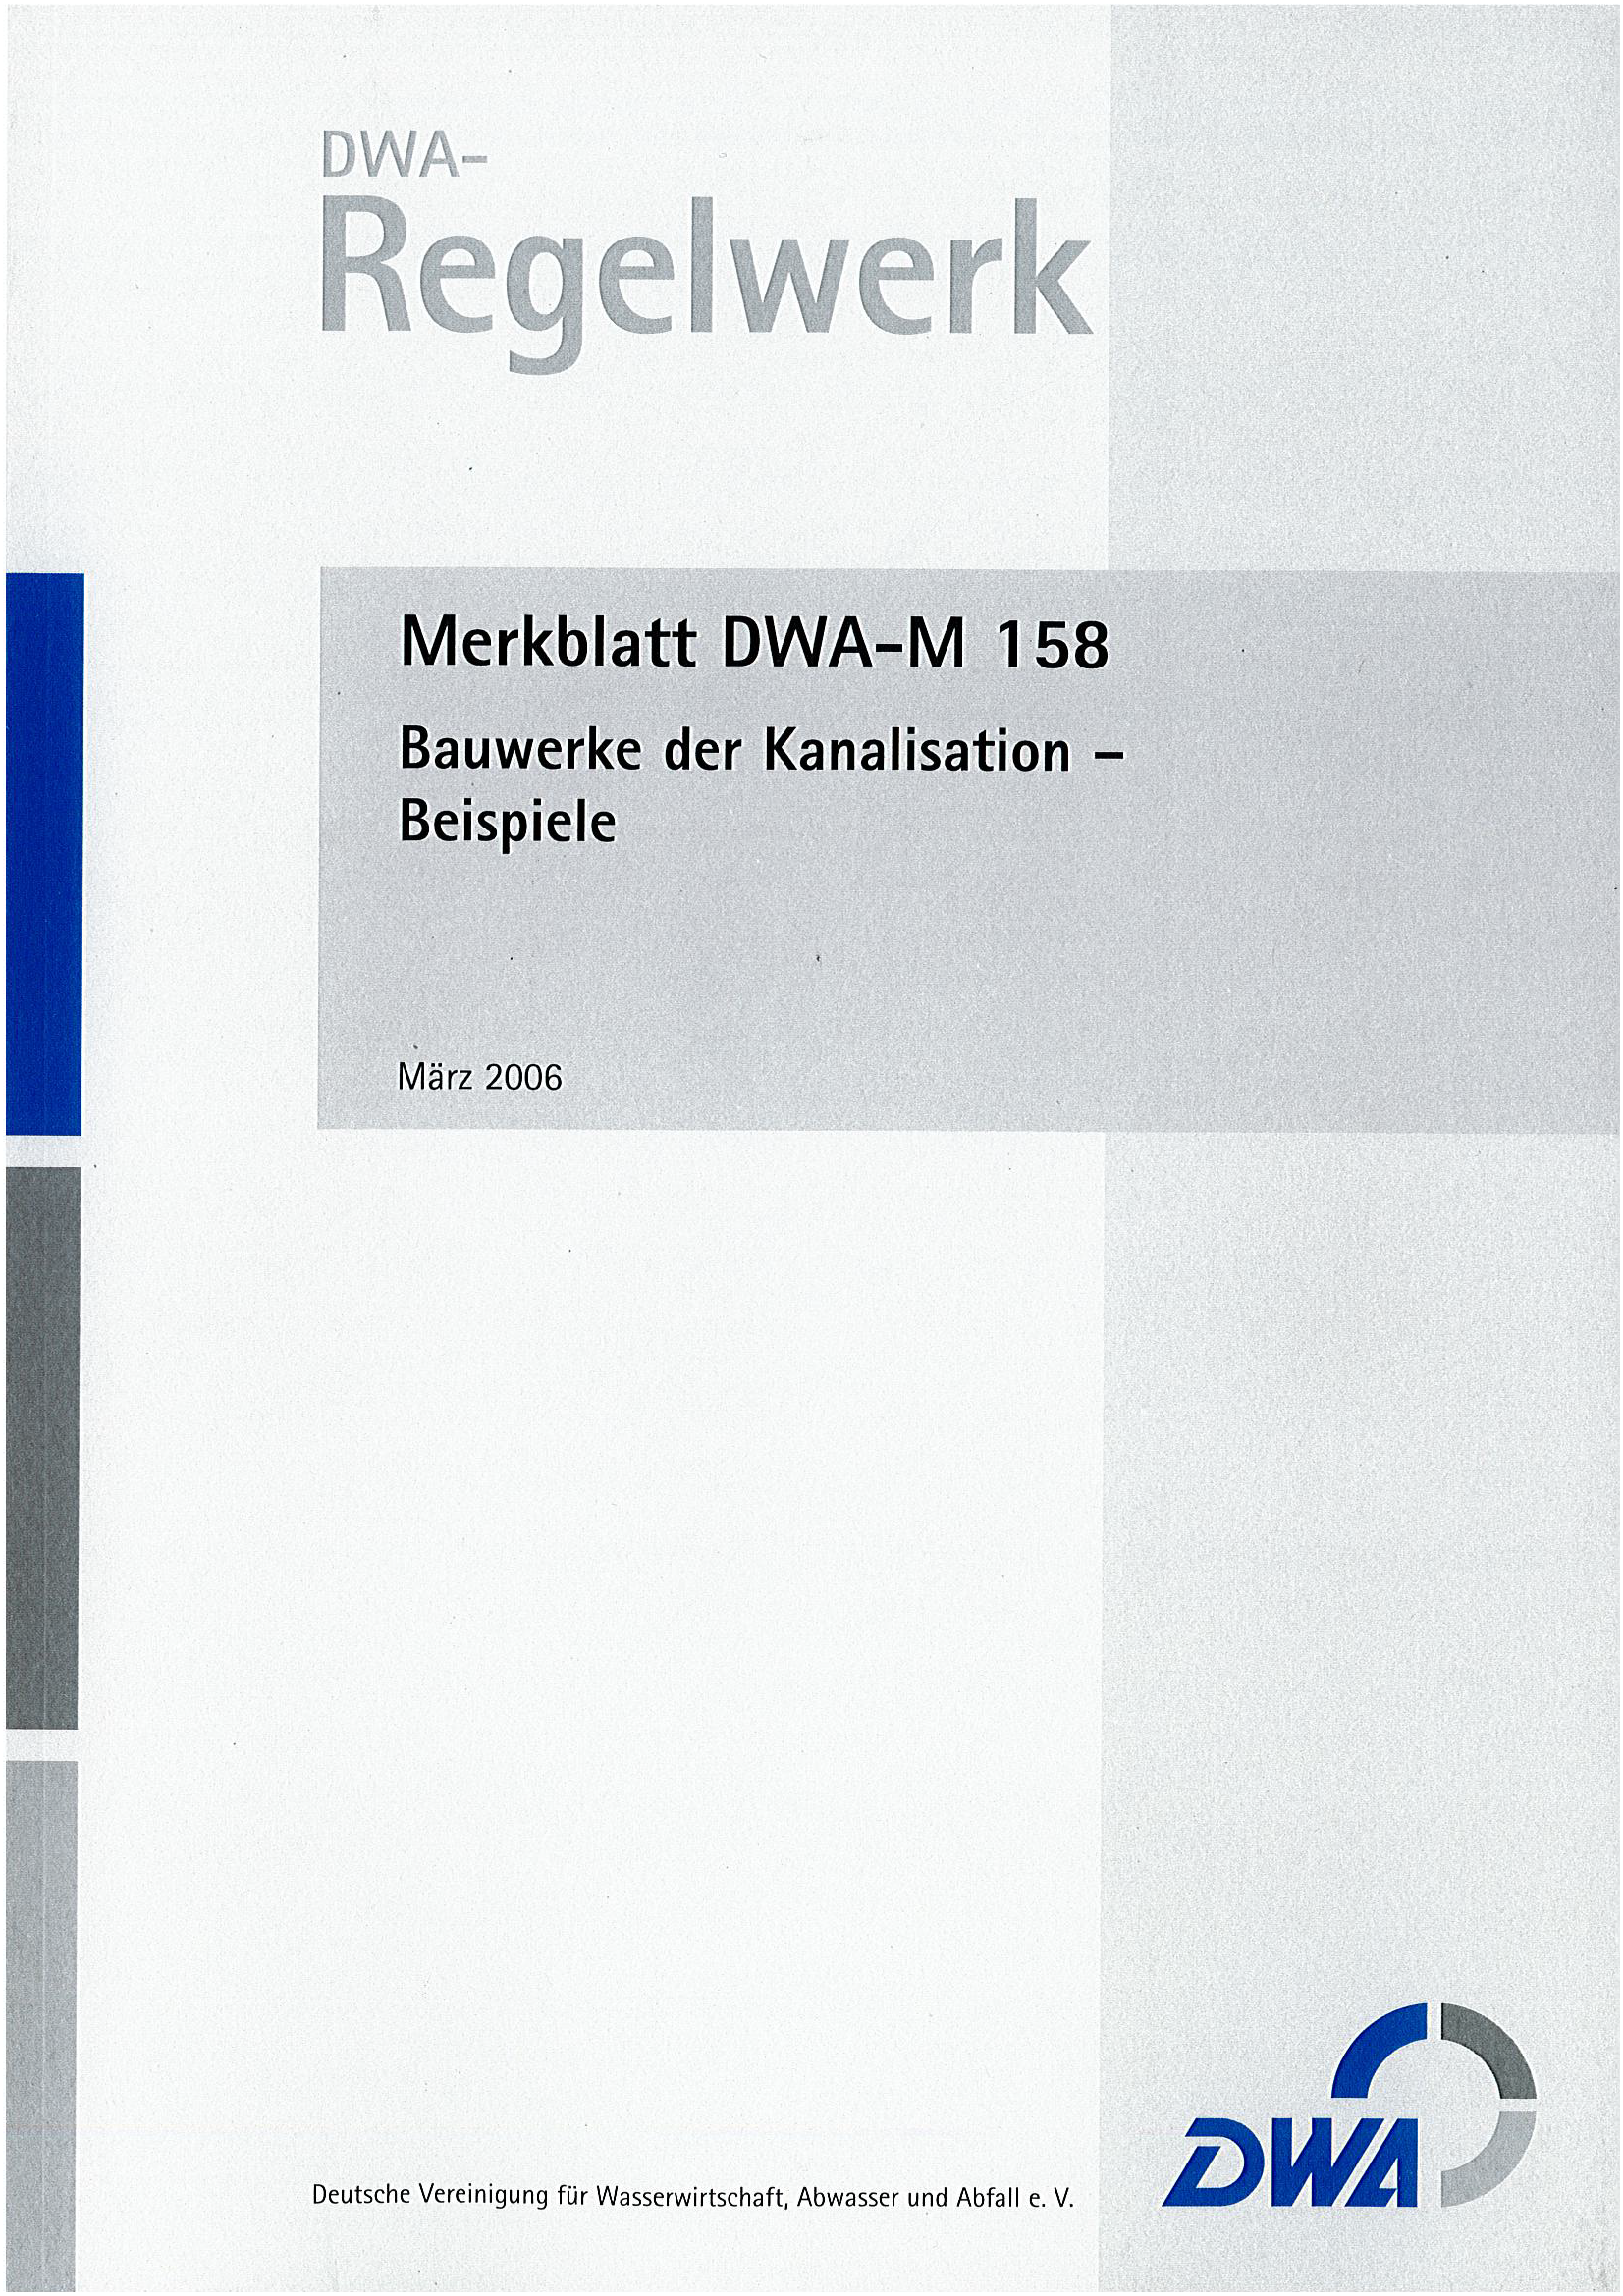 DWA-M 158 - Bauwerke der Kanalisation - Beispiele - März 2006